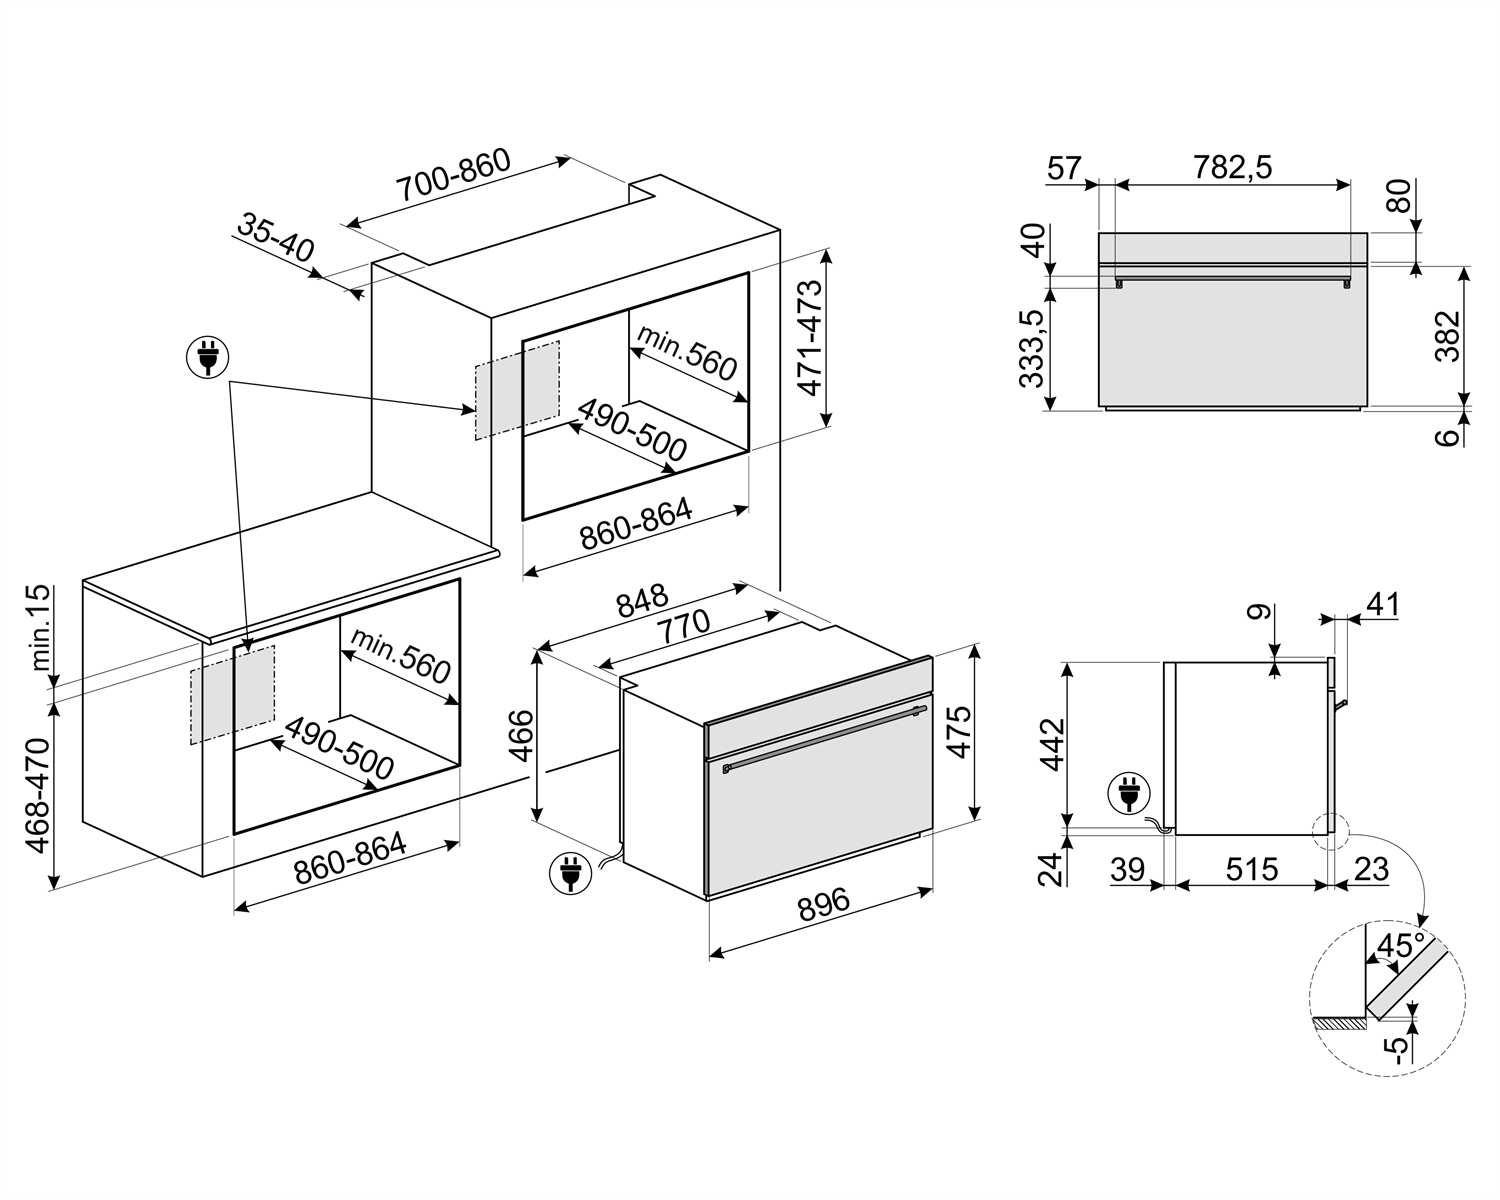 Maattekening SMEG oven inbouw 90 cm. breed SFR9390X